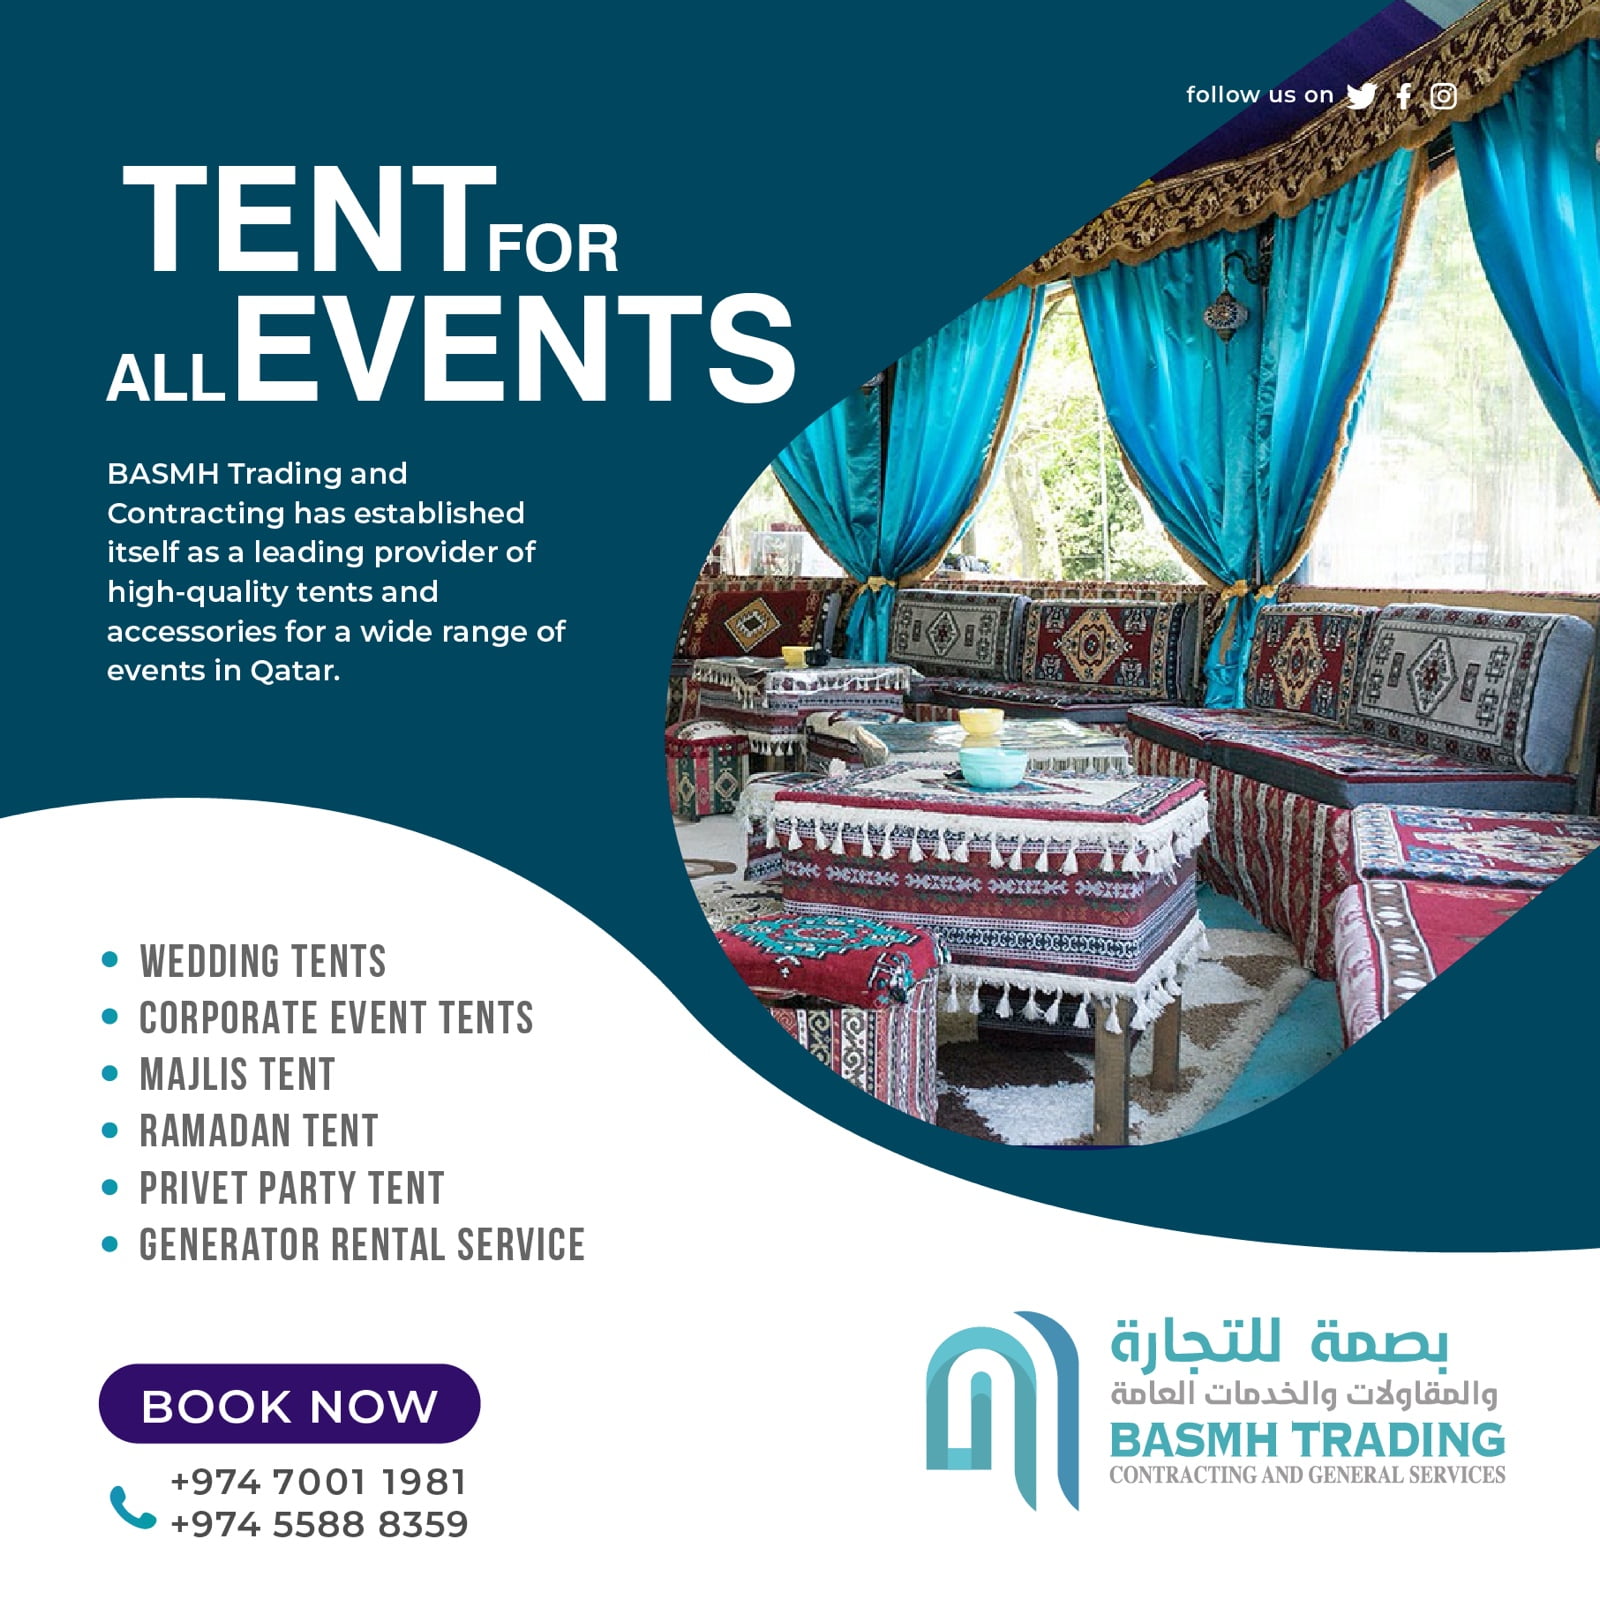 arabian-majlis-tent-rental-in-qatar